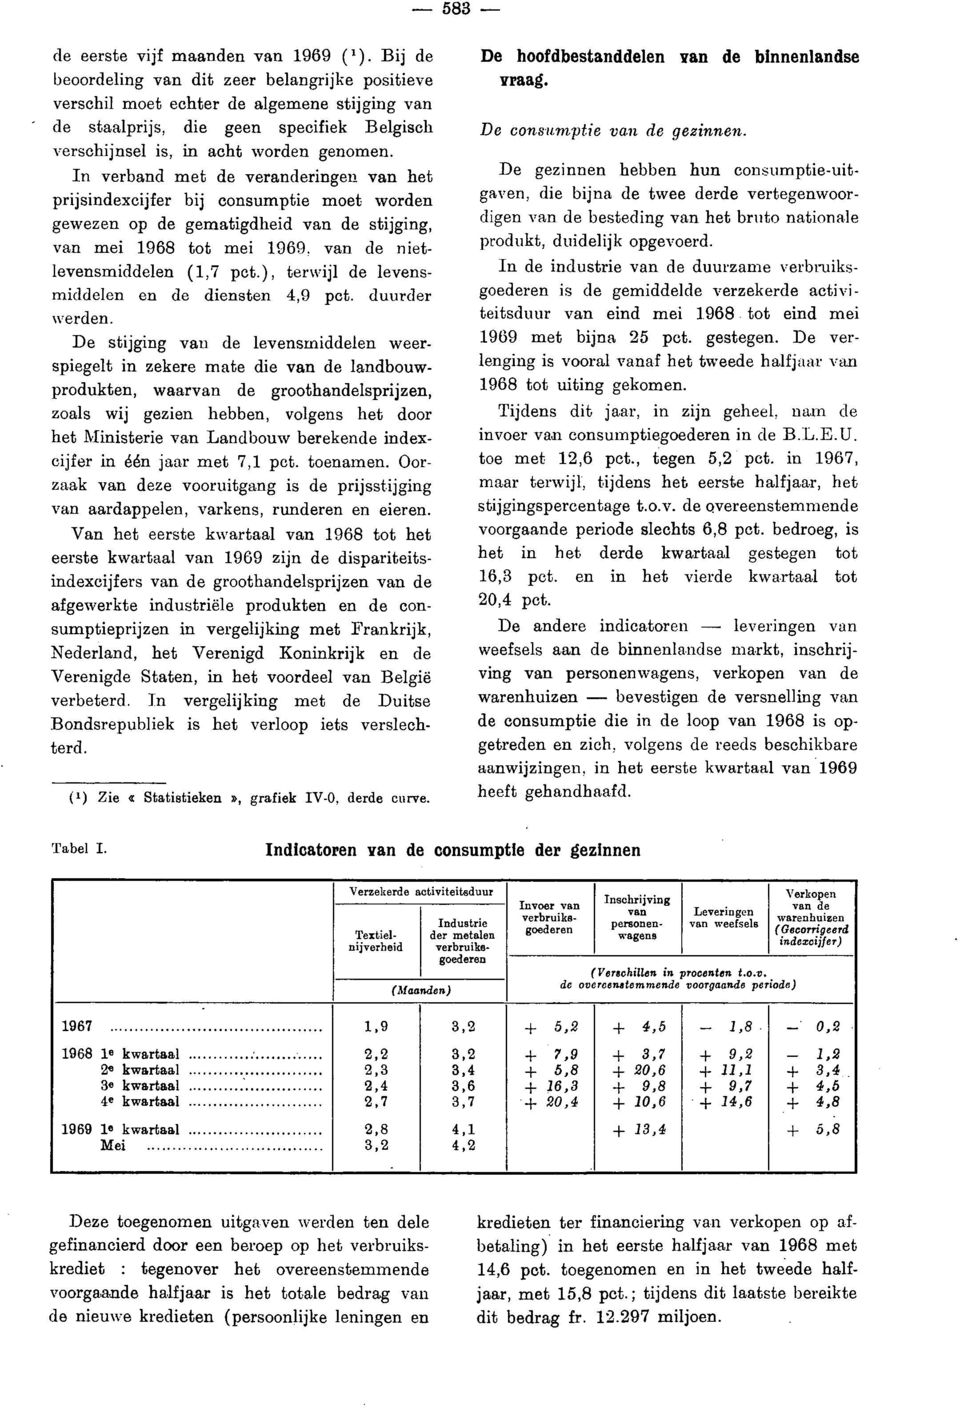 In verband met de veranderingen van het prijsindexcijfer bij consumptie moet worden gewezen op de gematigdheid van de stijging, van mei 1968 tot mei 1969. van de nietlevensmiddelen (1,7 pct.